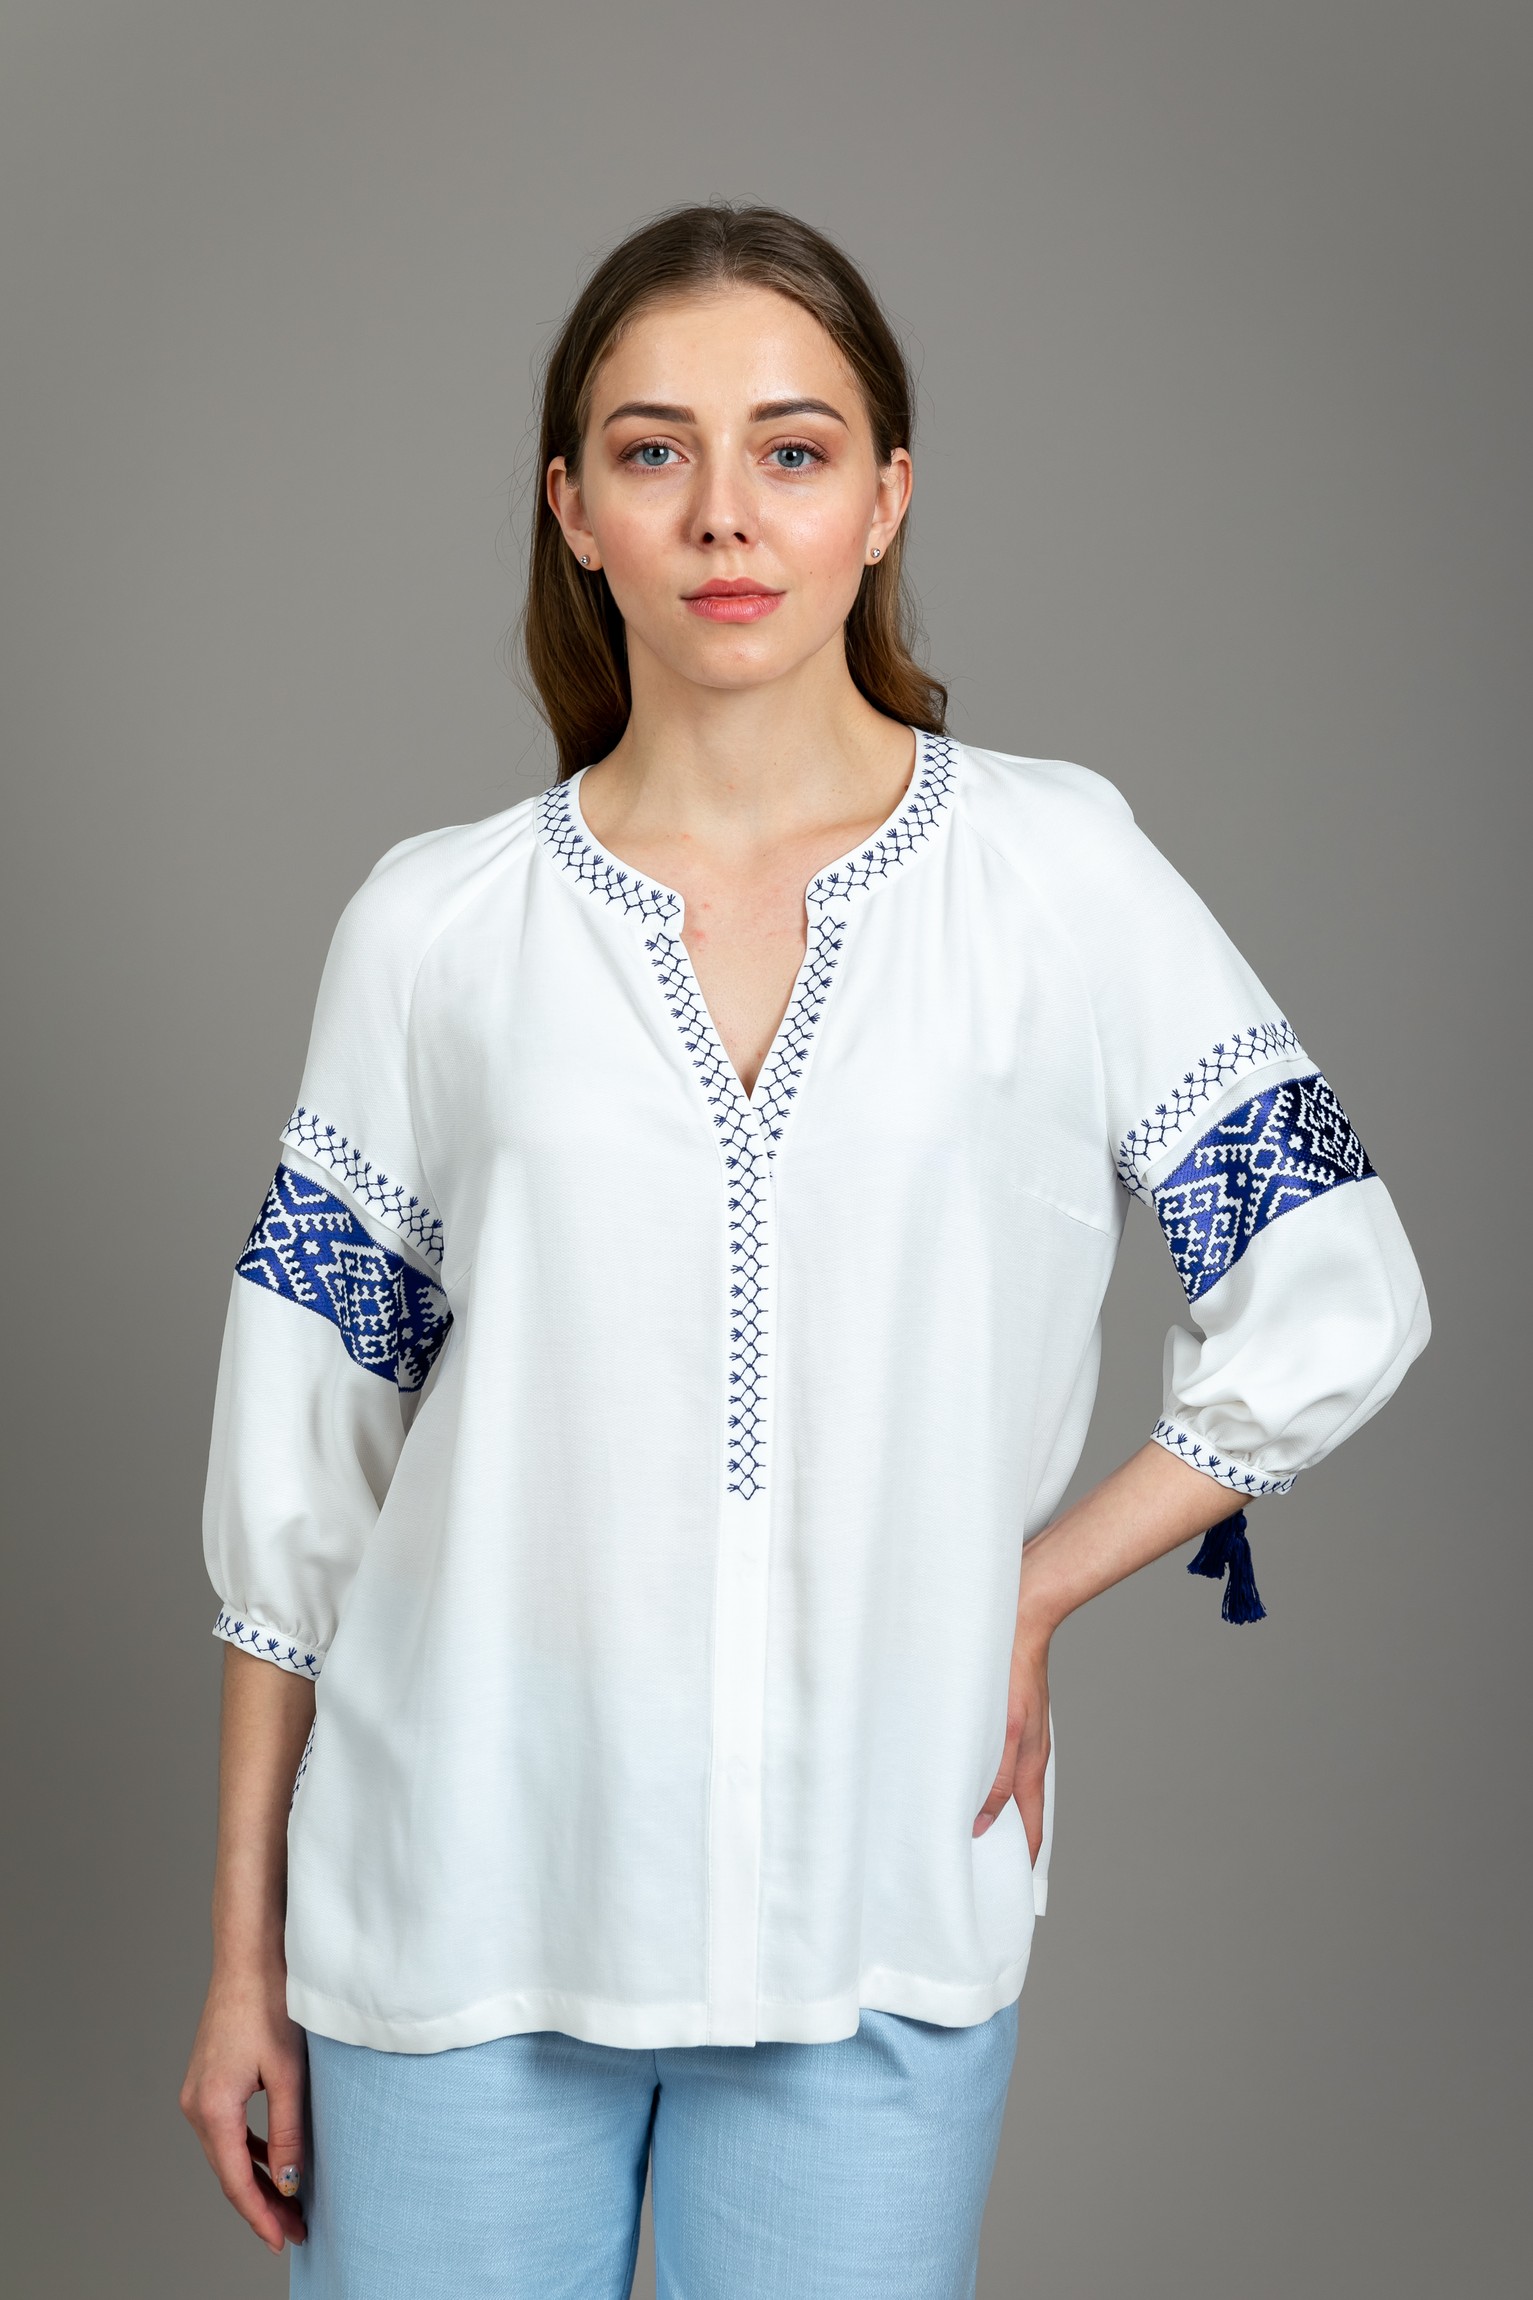 Блуза «Кружево любви» белая с синей вышивкой.